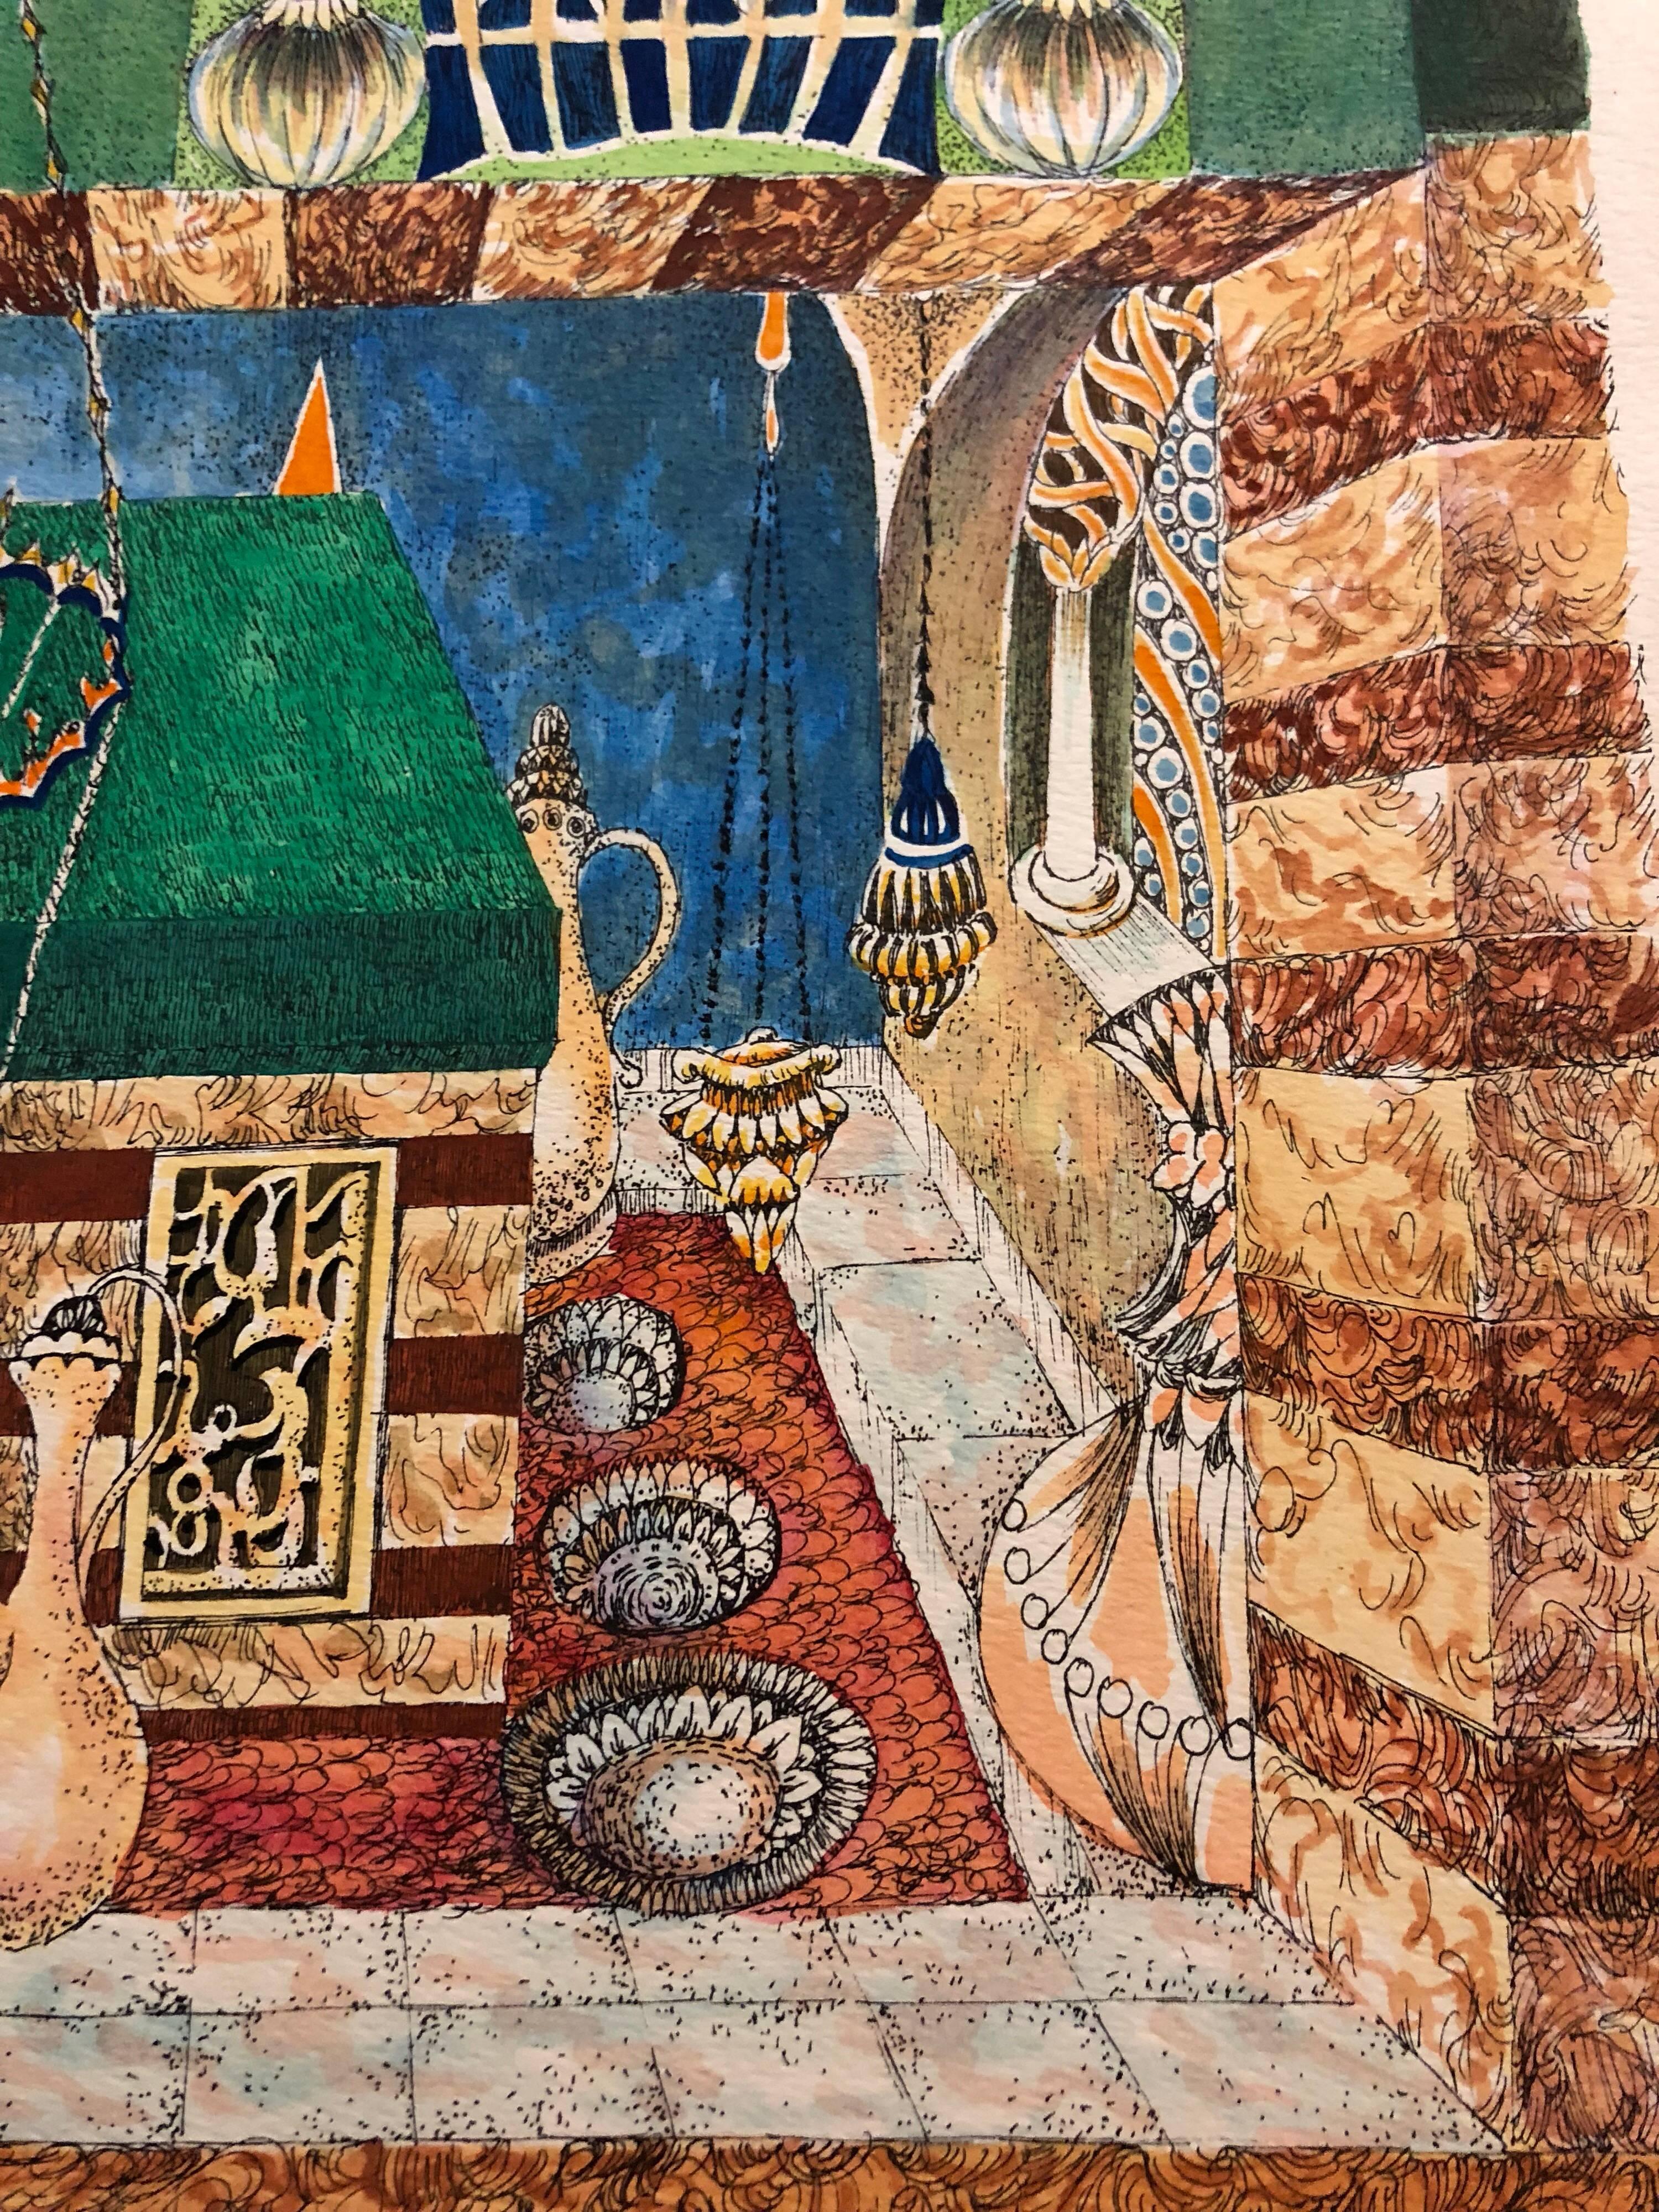 Baruch Nachshon wurde 1939 im Mandatsgebiet Palästina in der Stadt Haifa geboren.
Nachshon begann in seiner frühen Kindheit zu malen und entwickelte seine Beziehung zur Kunst und zu Künstlern während seiner gesamten Jugend. Während seines